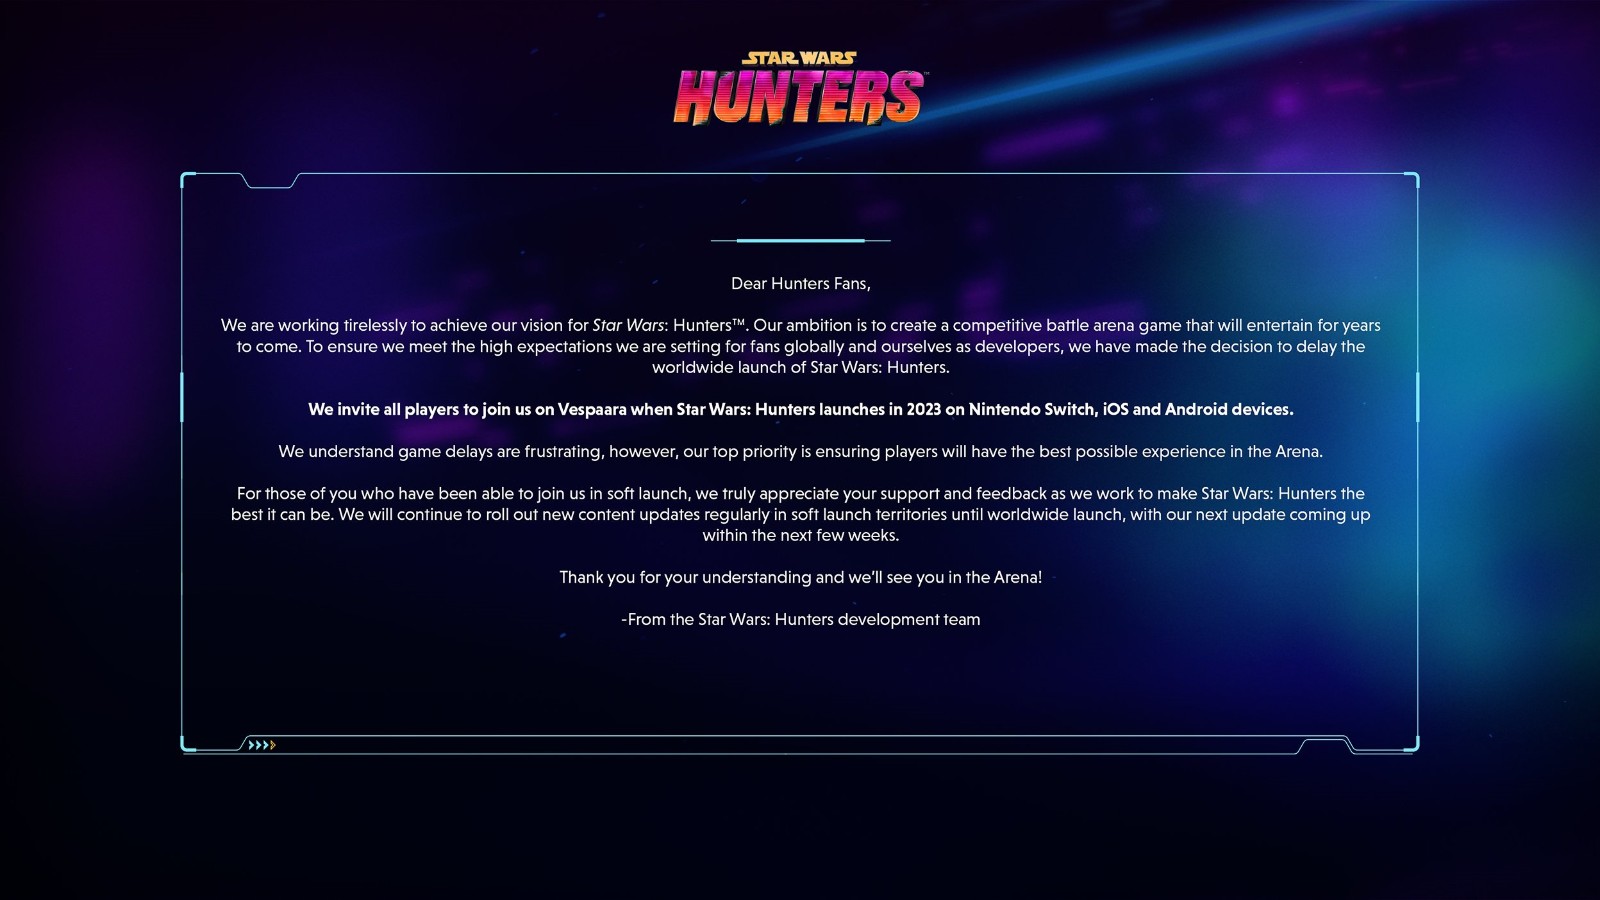 免費星戰遊戲《星球大戰：獵人》再次延期